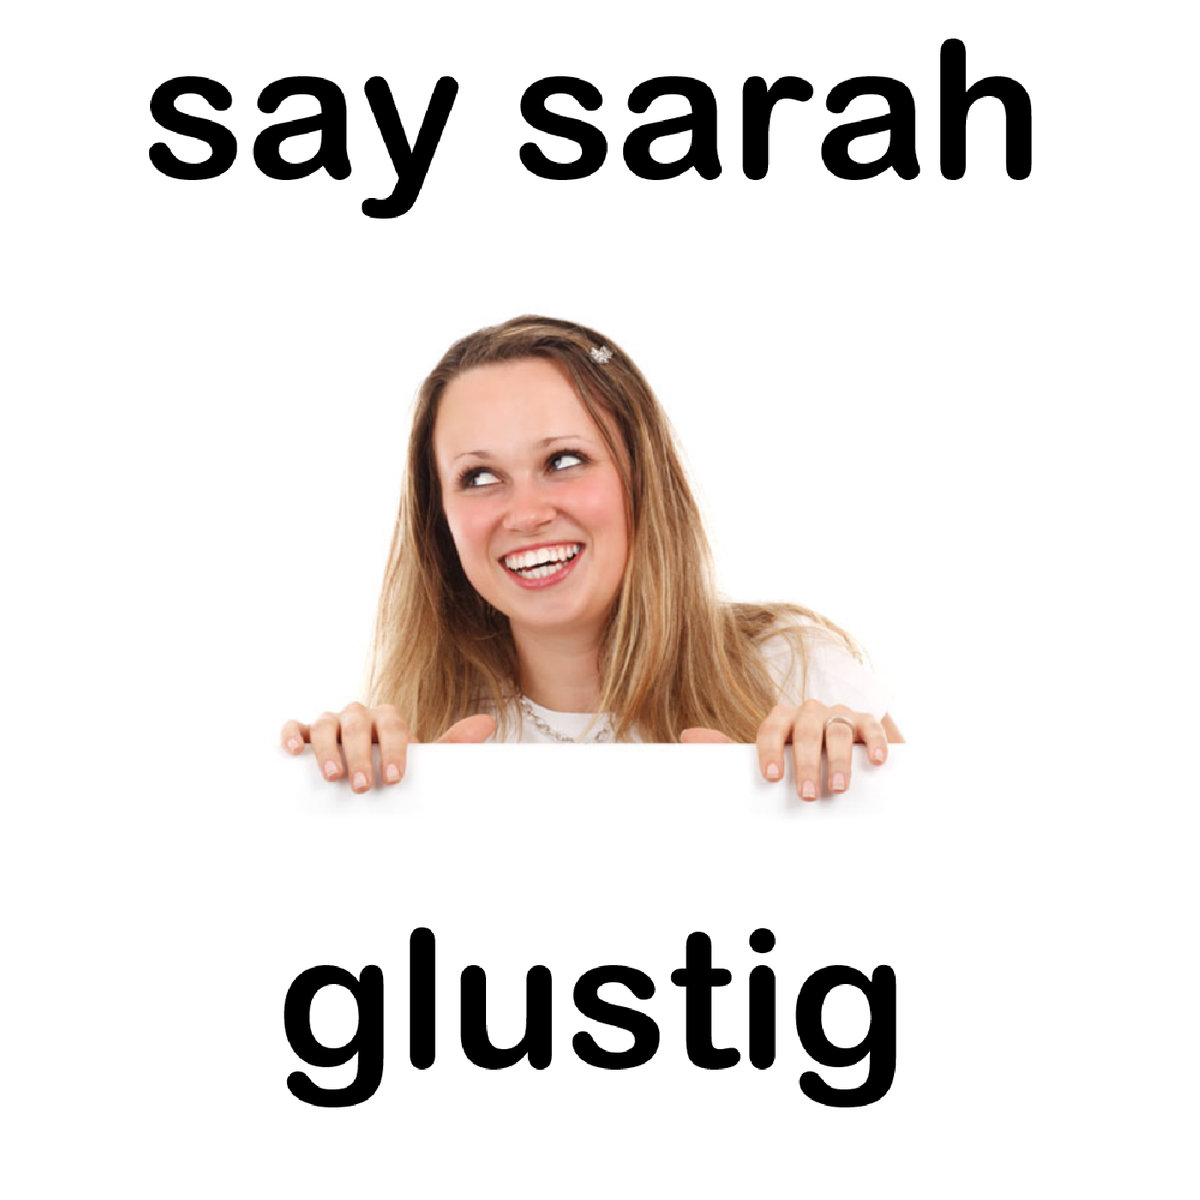  Glustig – Say Sarah